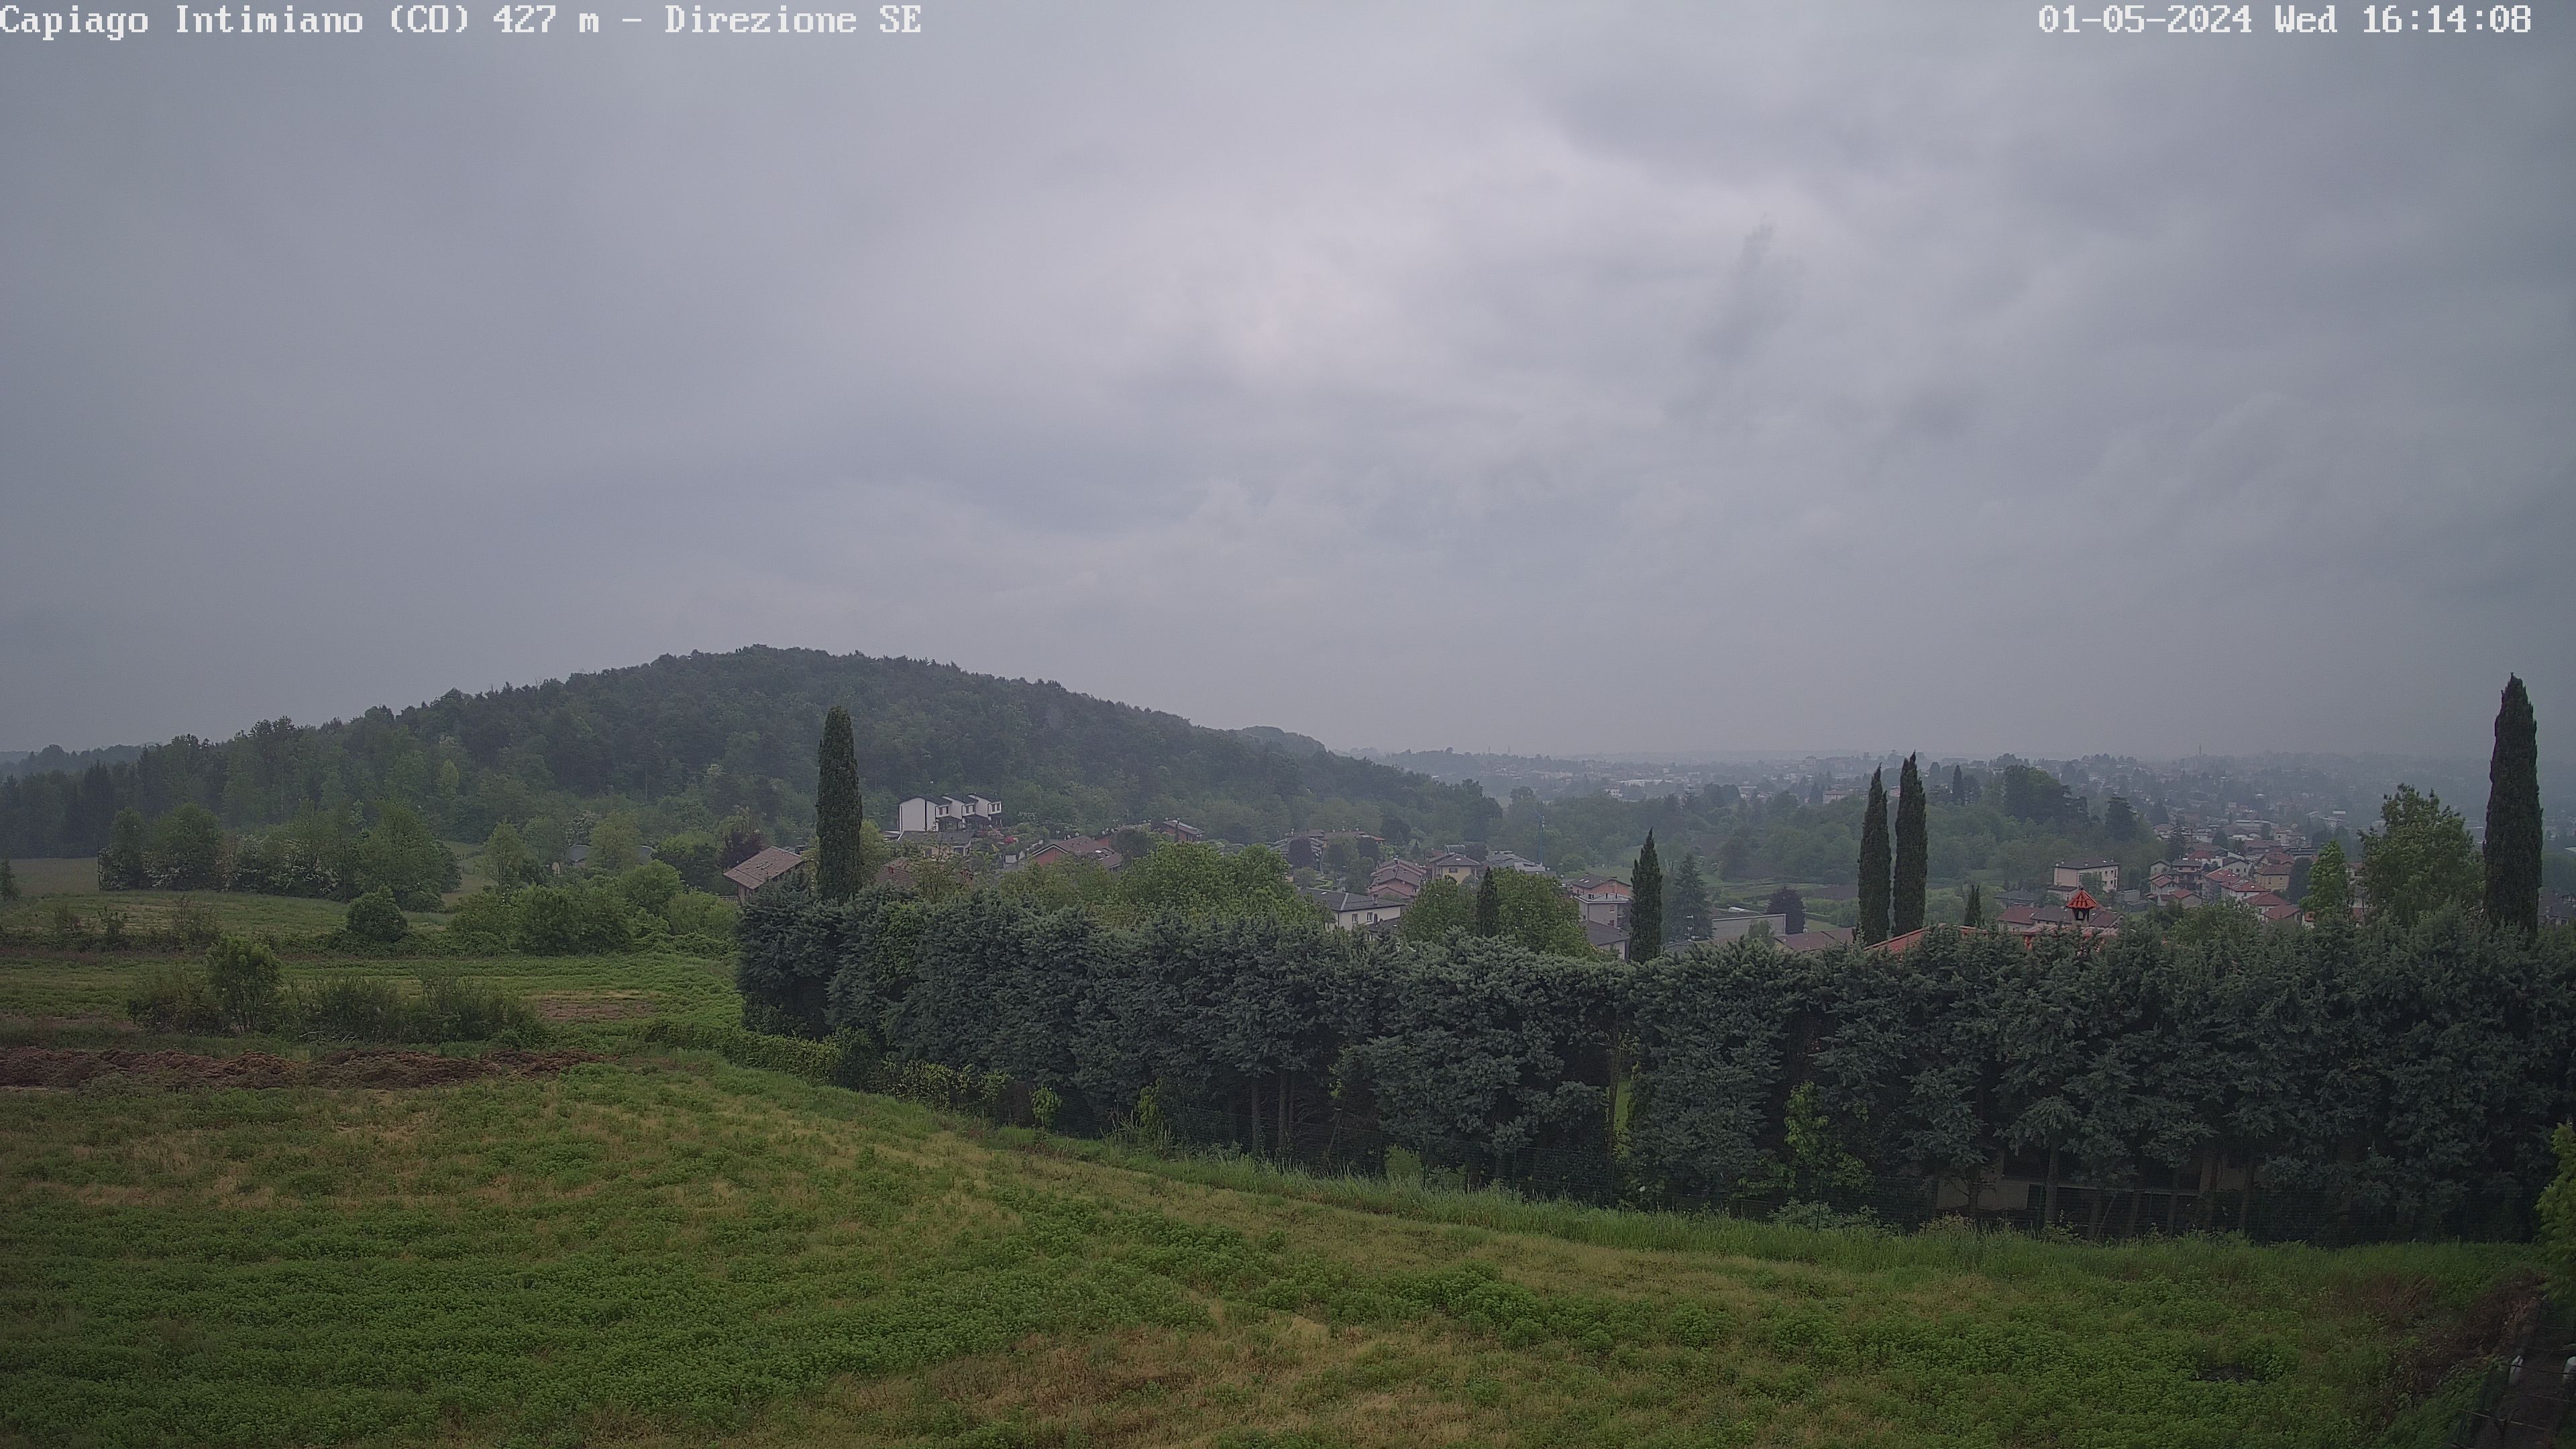 Webcam Lombardia: Capiago Intimiano, Como